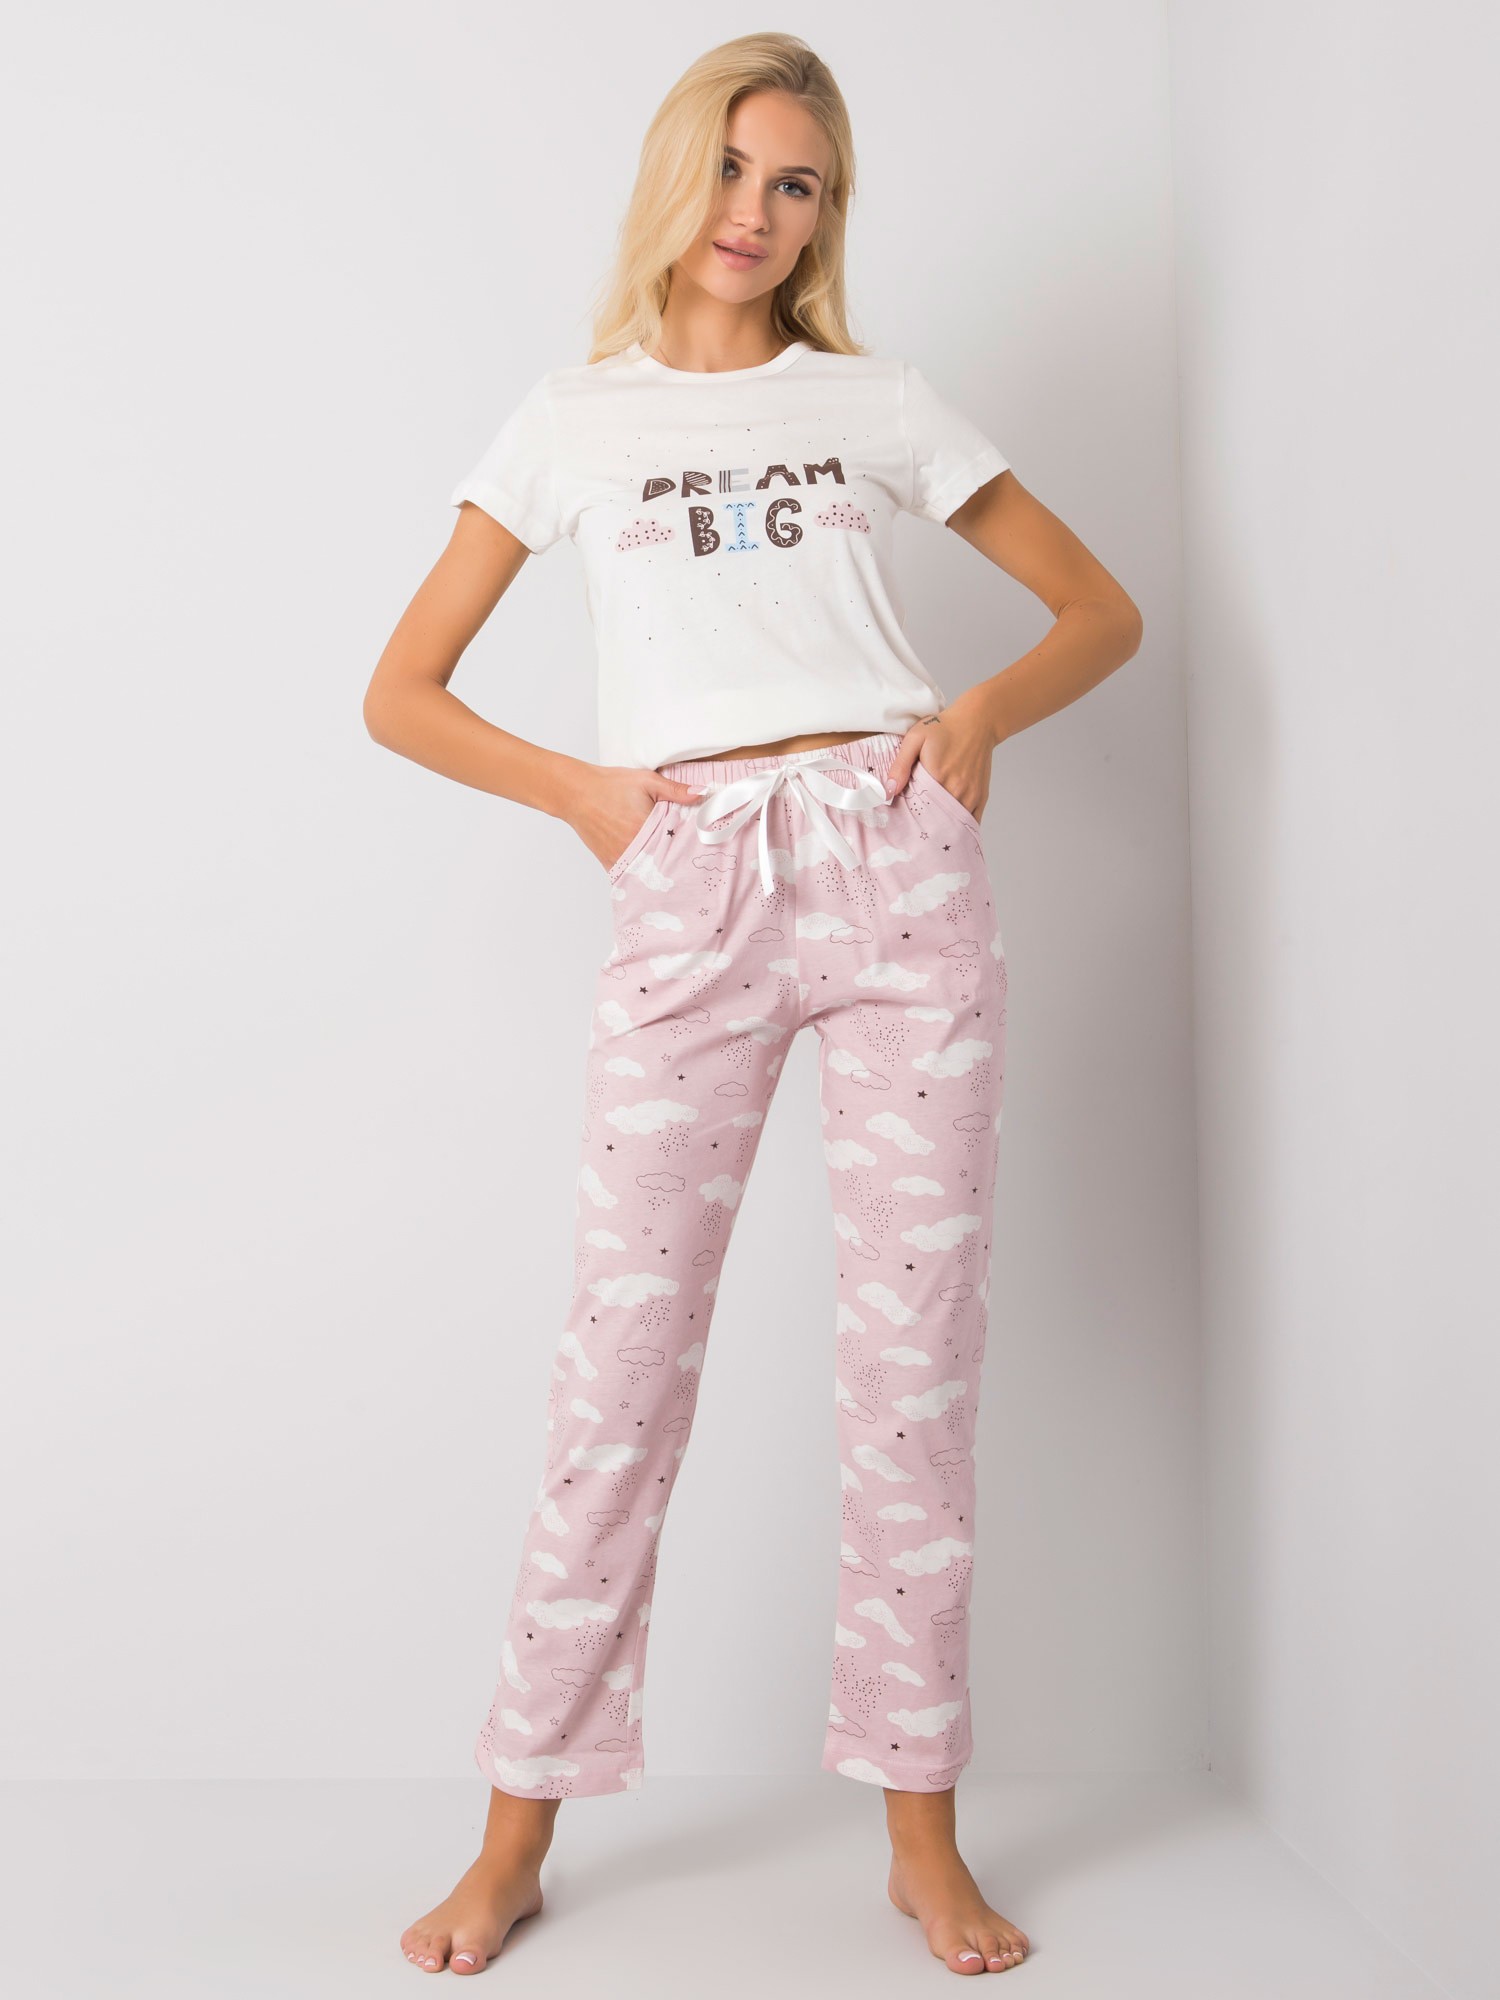 Dámske bielo-ružové pyžamo - L